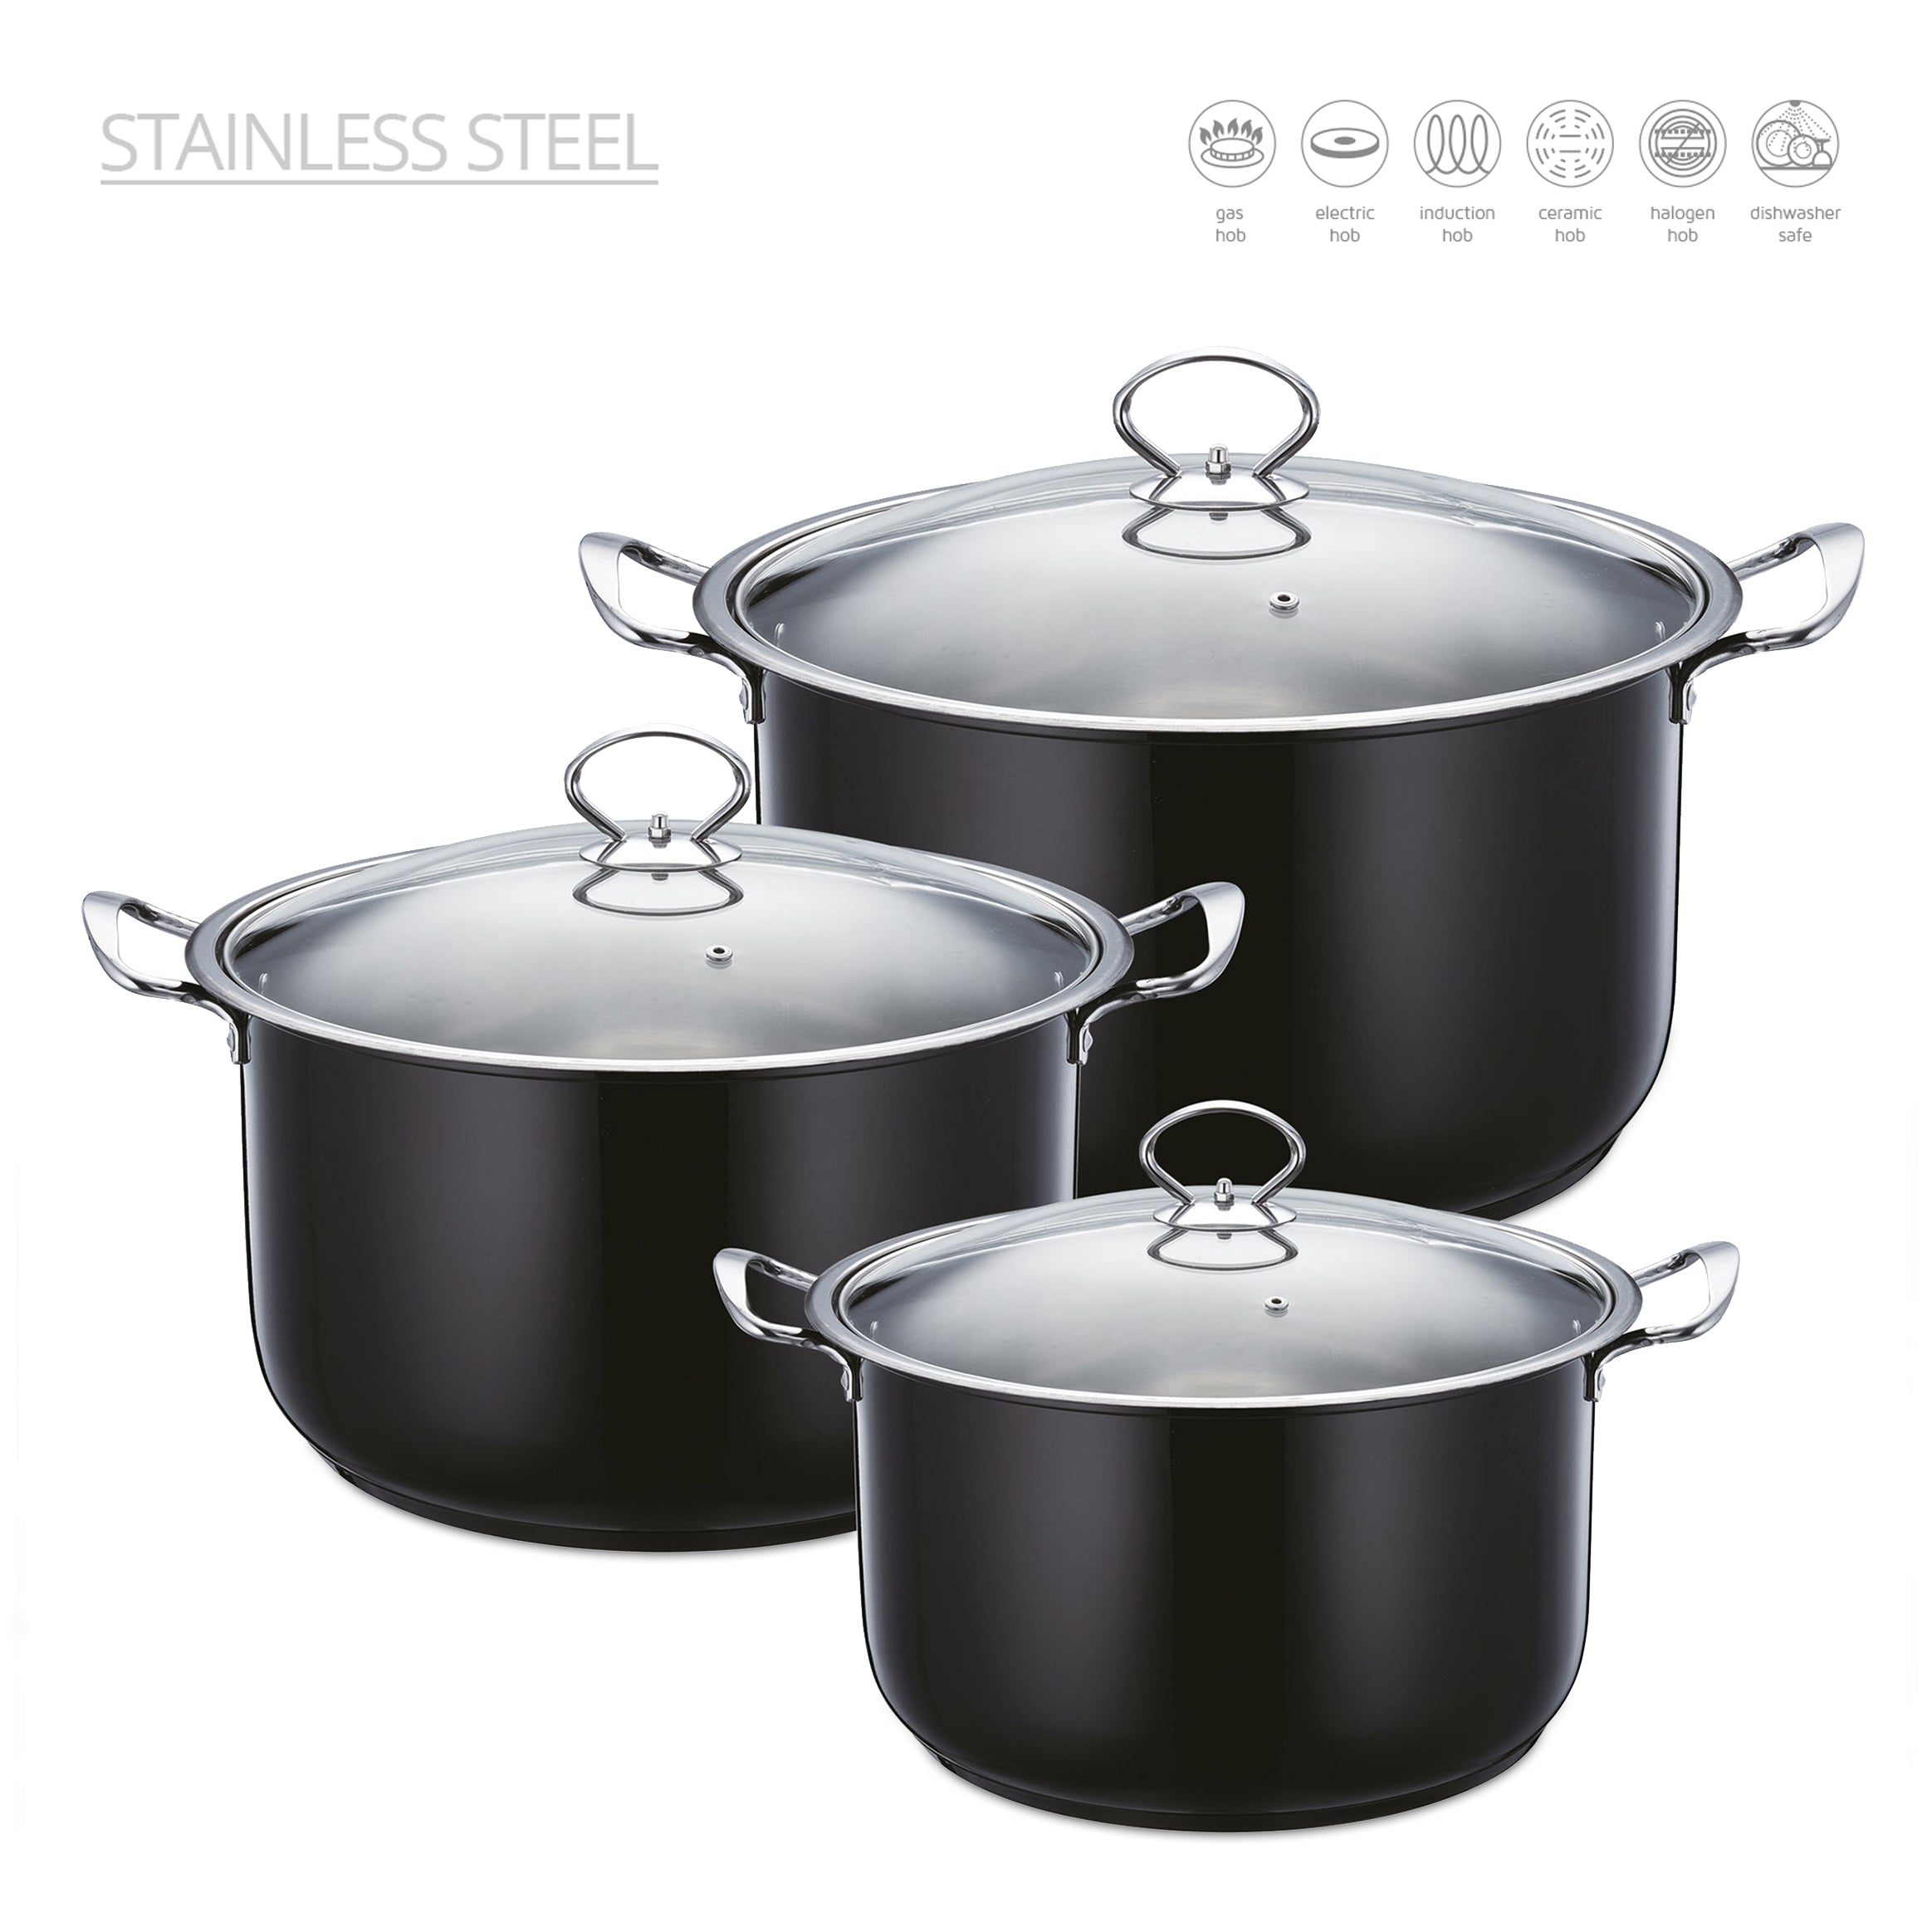 Stainless Steel Stockpot - Induction Base - ONYX - 3Pcs Set